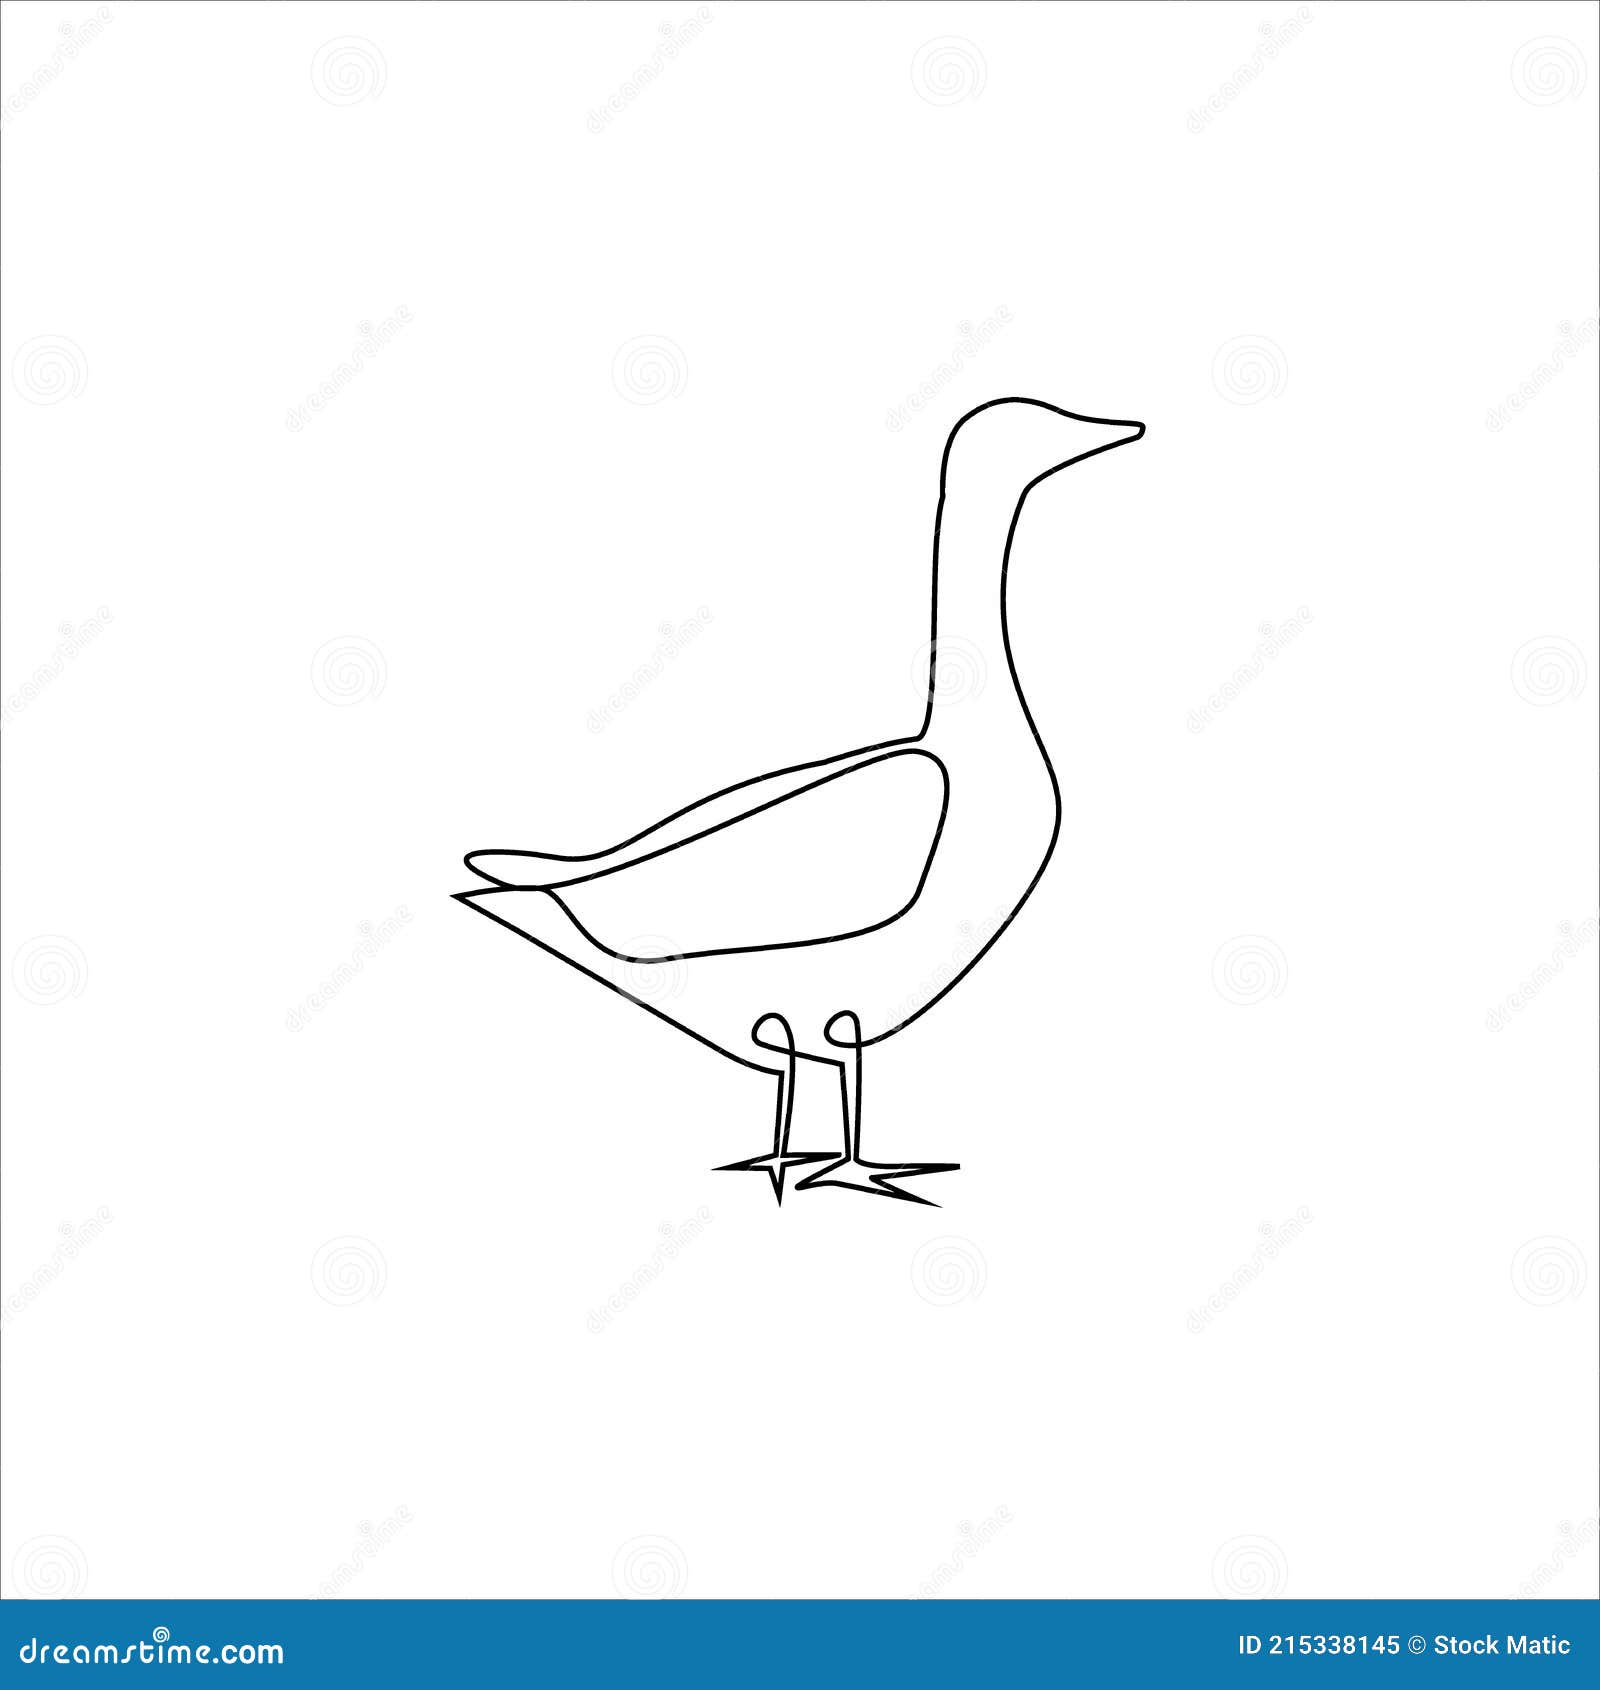 desenho vetorial simples desenhado à mão com contorno preto. aves